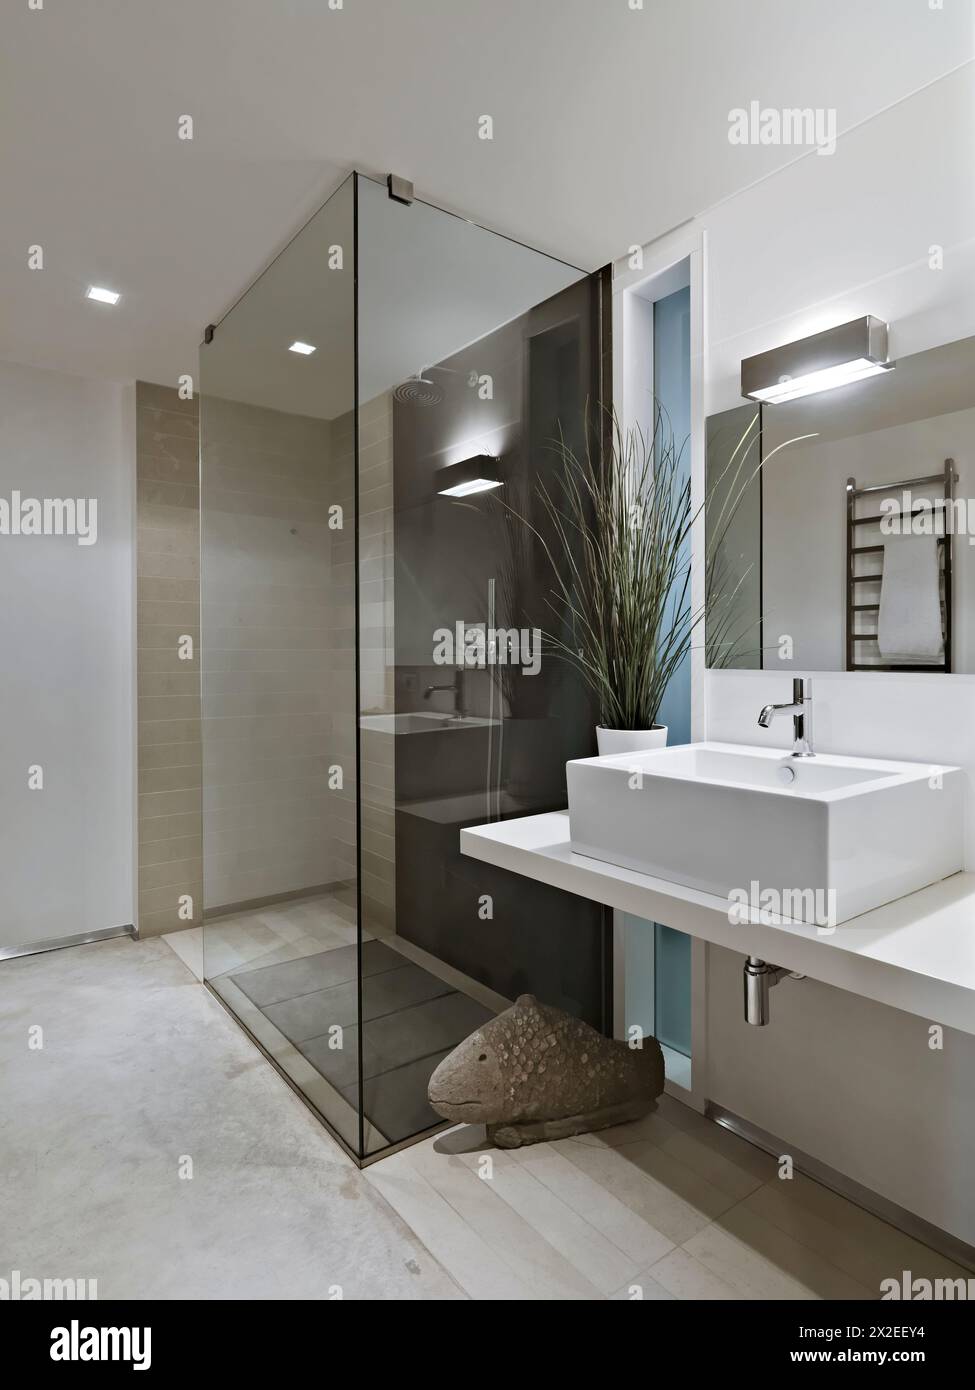 Innenaufnahmen eines modernen Badezimmers im Vordergrund, Waschbecken und Glasdusche Stockfoto